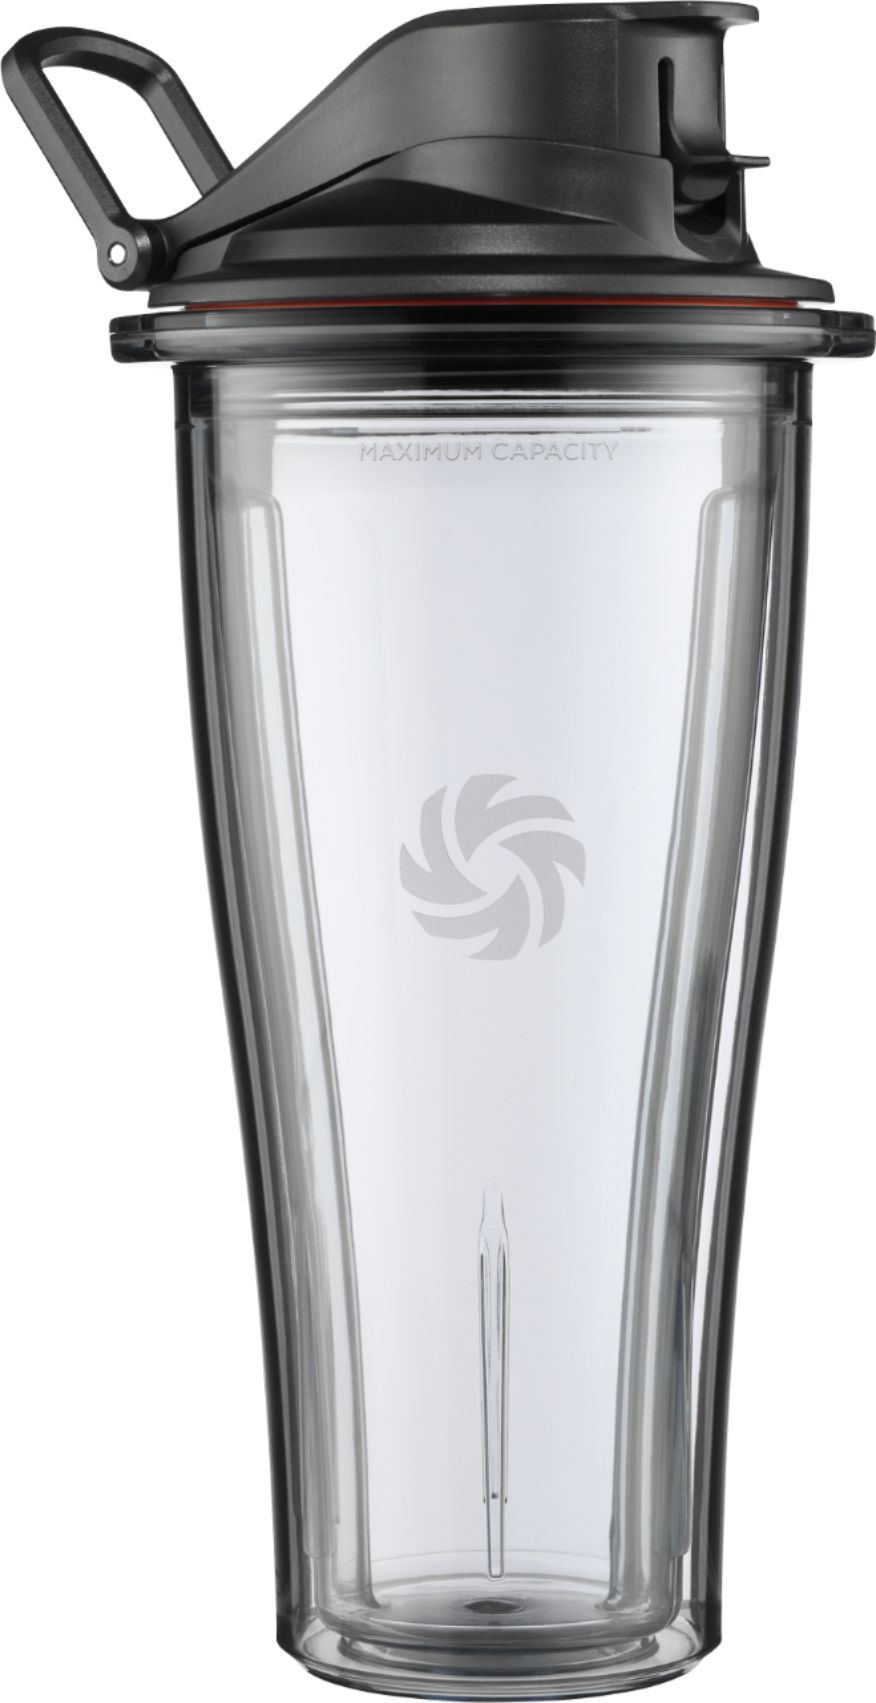 Vitamix Ascent Blending Cup - 8 Oz.